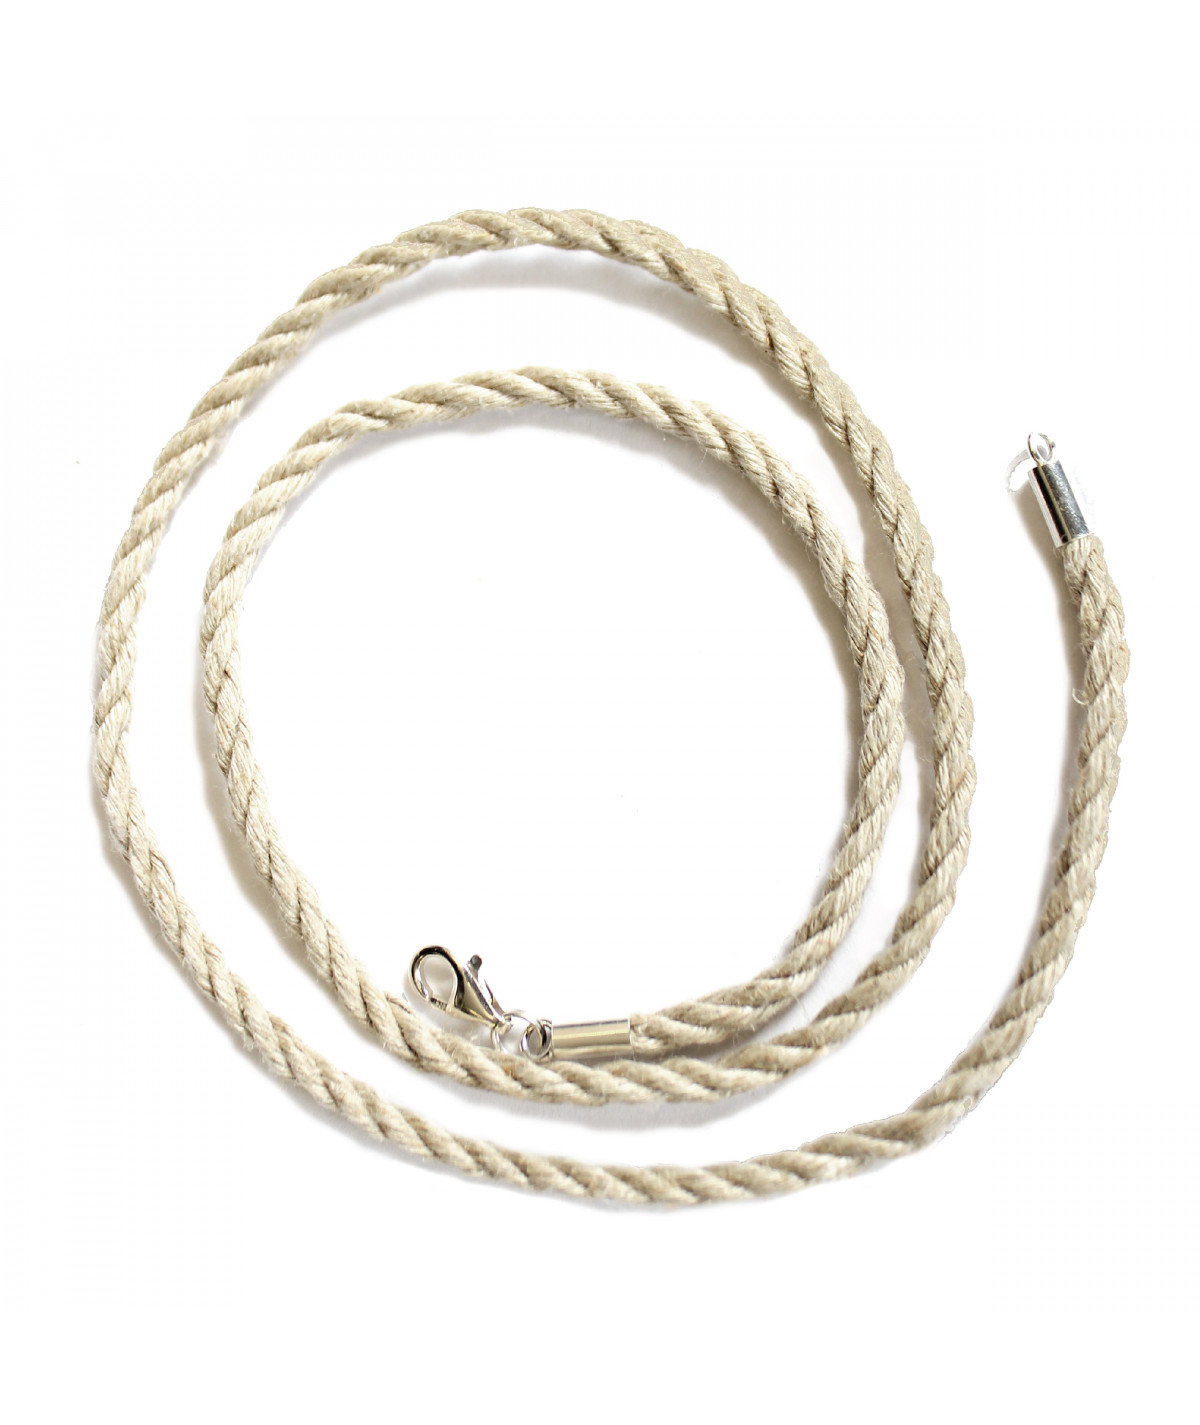 Grey linen rope